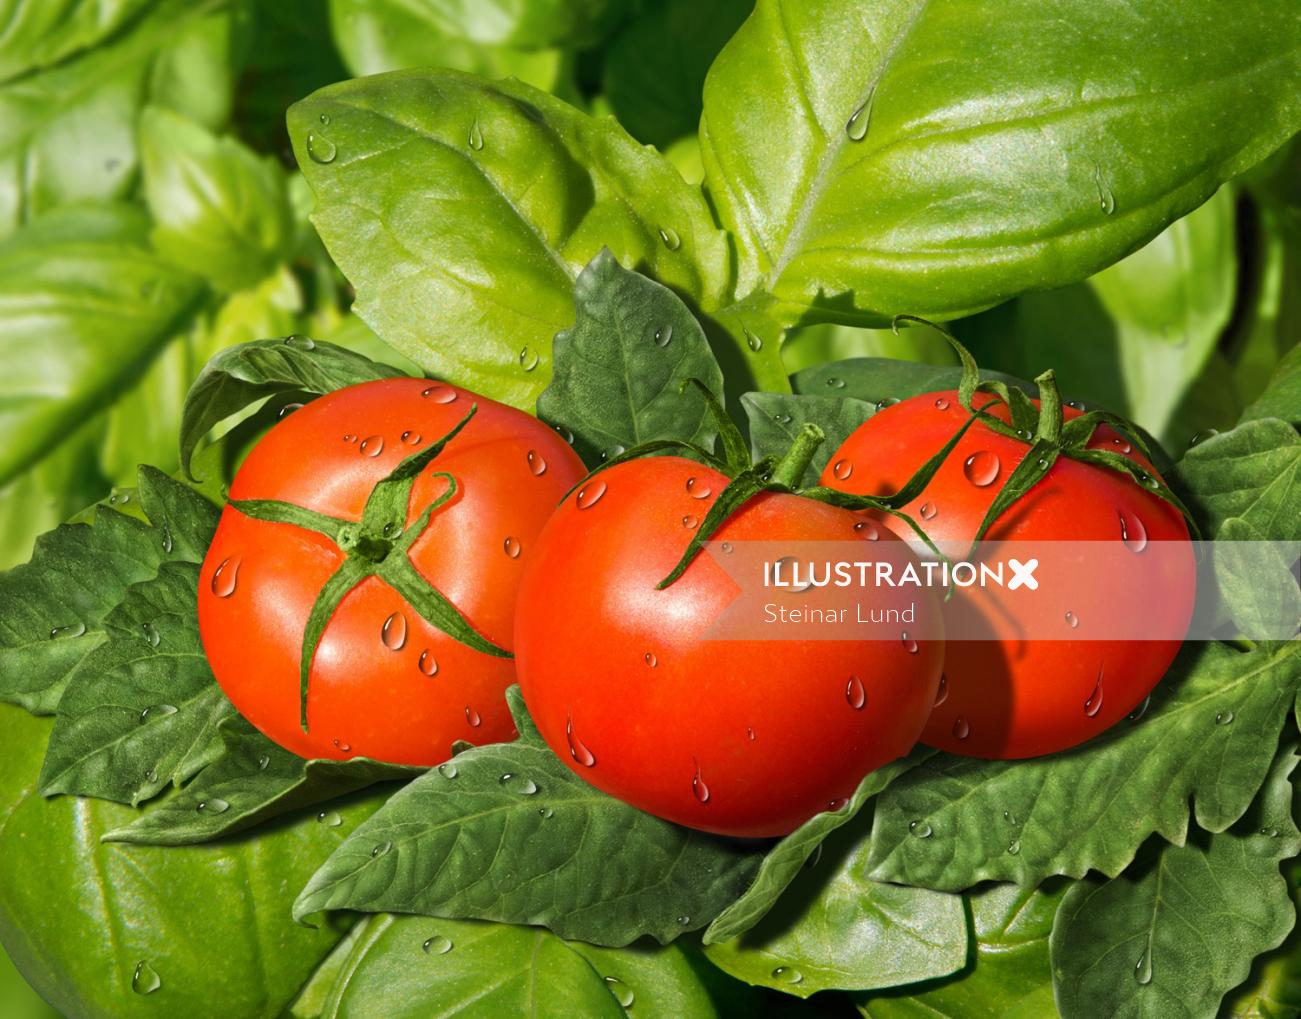 Tomatoes on leaves | Vegetables illustration